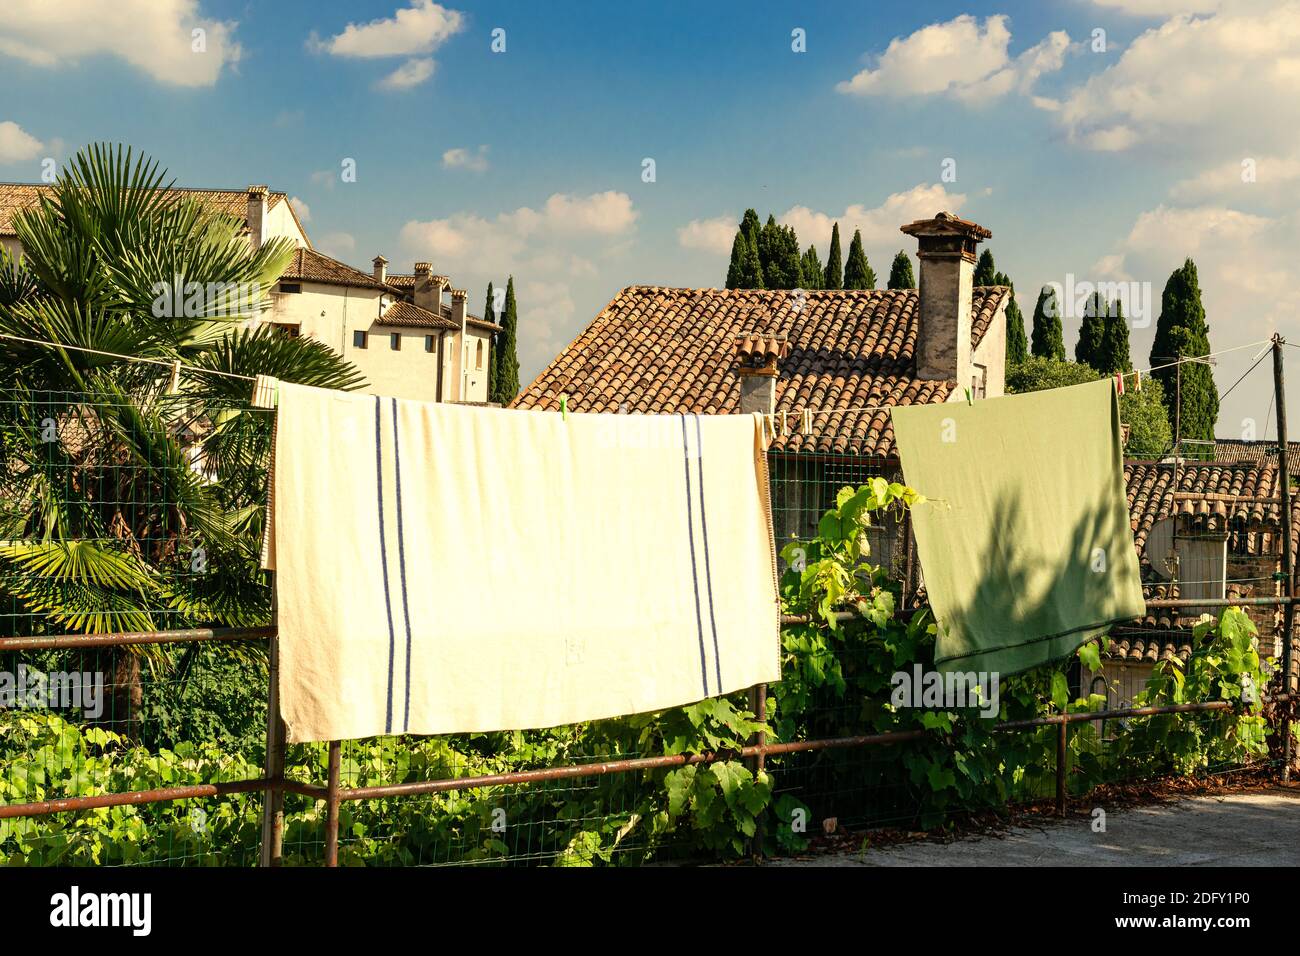 Scorcio del panorama dell'antico borgo di Asolo. Vestiti appesi al sole. Treviso, Italia Foto Stock